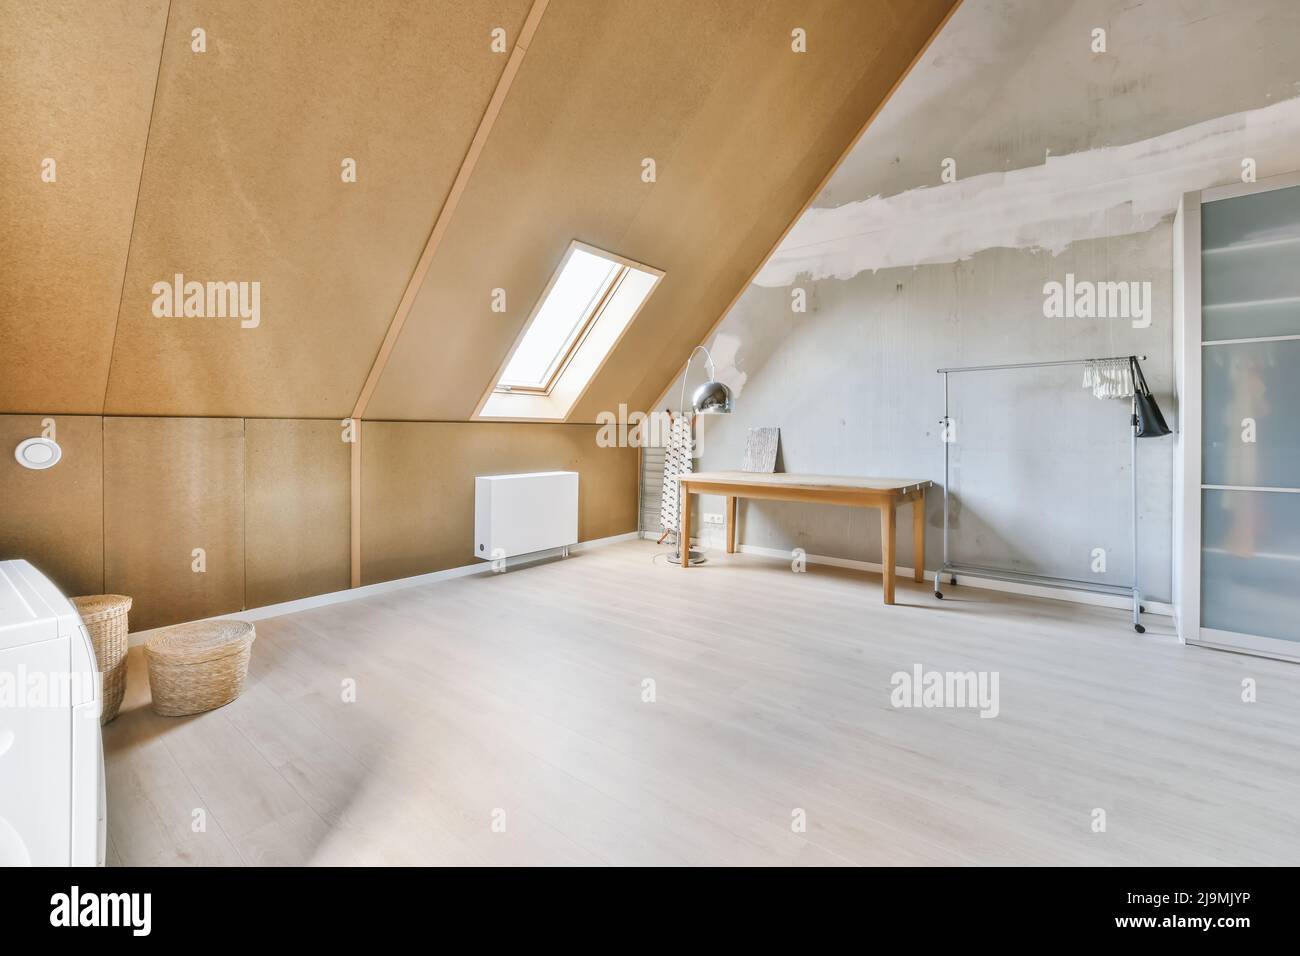 Kleiderschrank mit durchsichtigen Türen in der Nähe von leerer Schiene und  Tisch in geräumigen hellen Dachgeschoss Zimmer des Hauses Stockfotografie -  Alamy